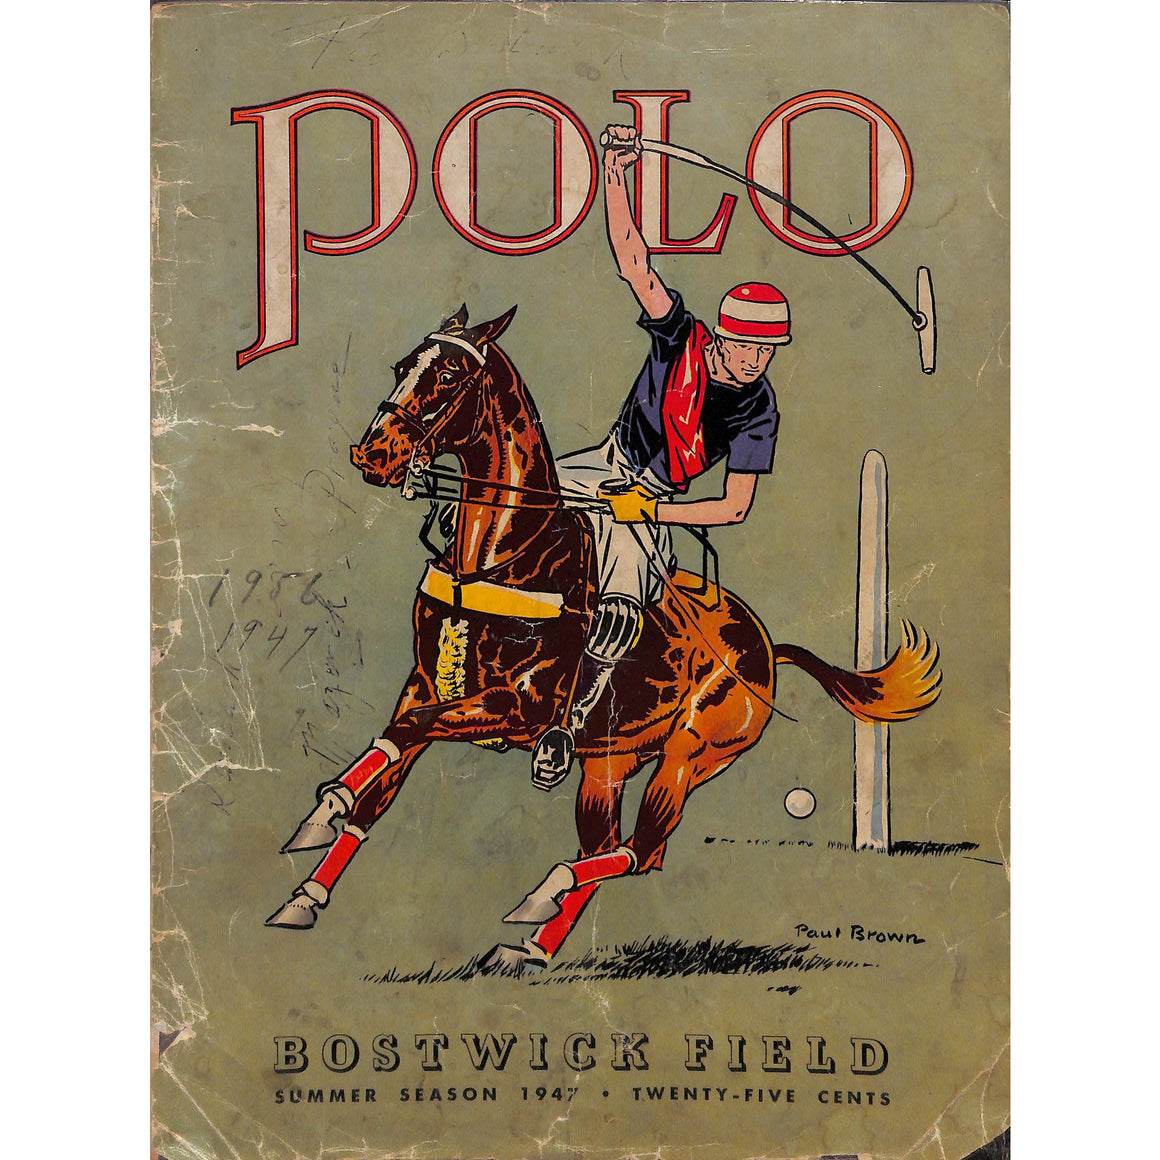 Polo Bostwick Field Summer Season 1947